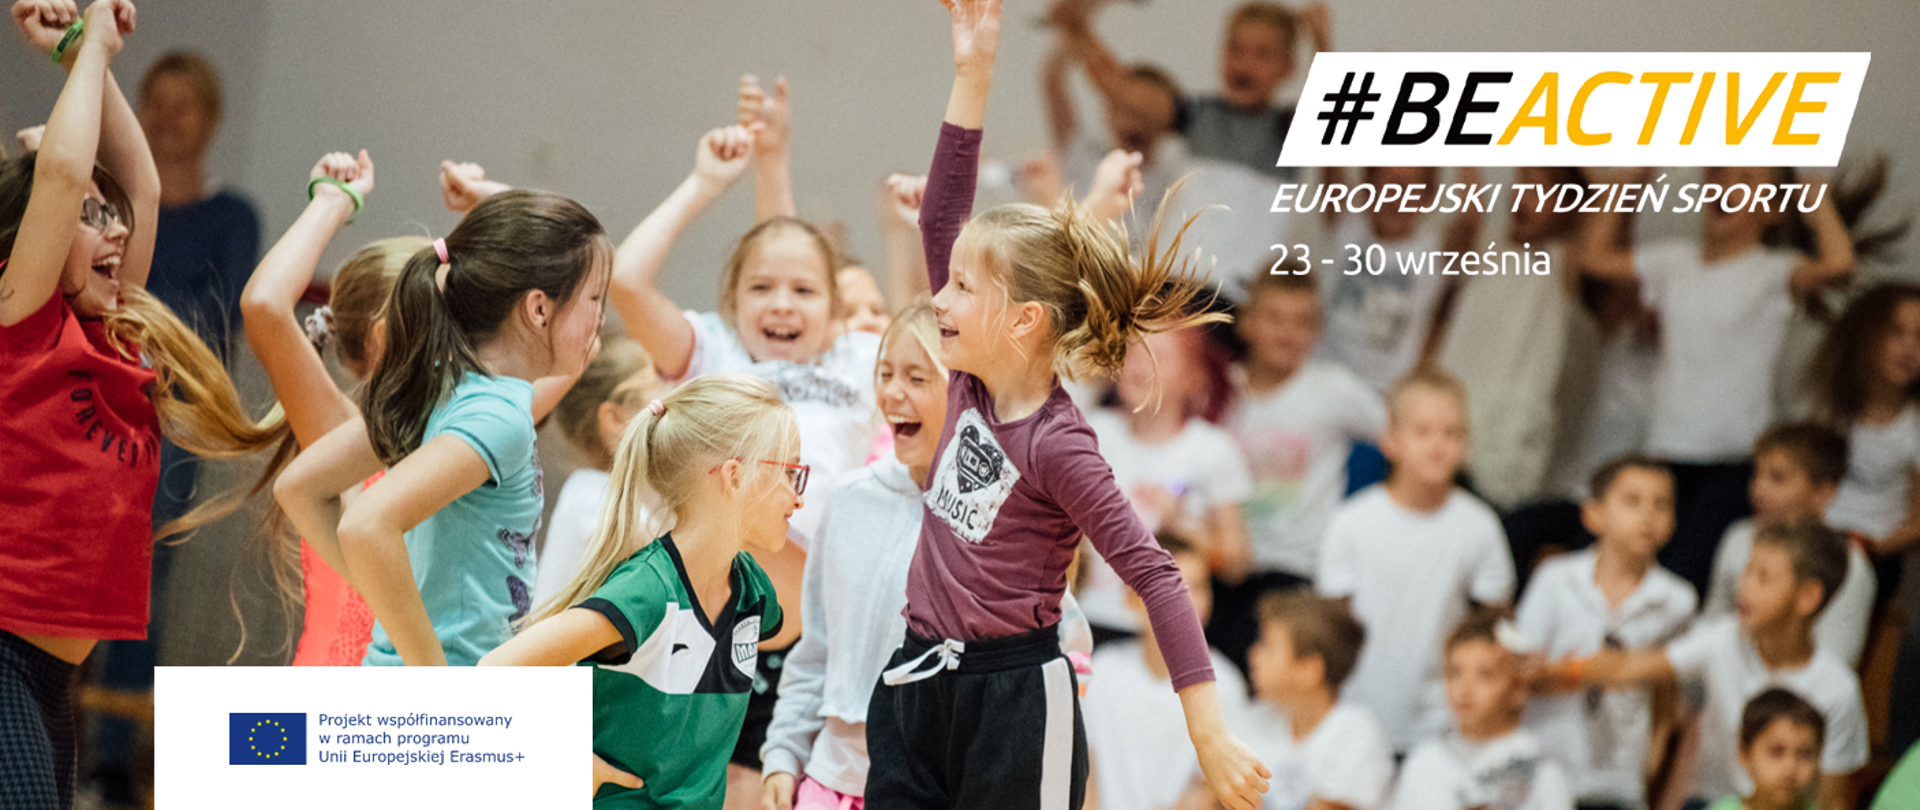 Grupa dzieci podskakuje. Na twarzach uśmiechy. Na pierwszym planie #BeActive Europejski Tydzień Sportu 23-30 Września.